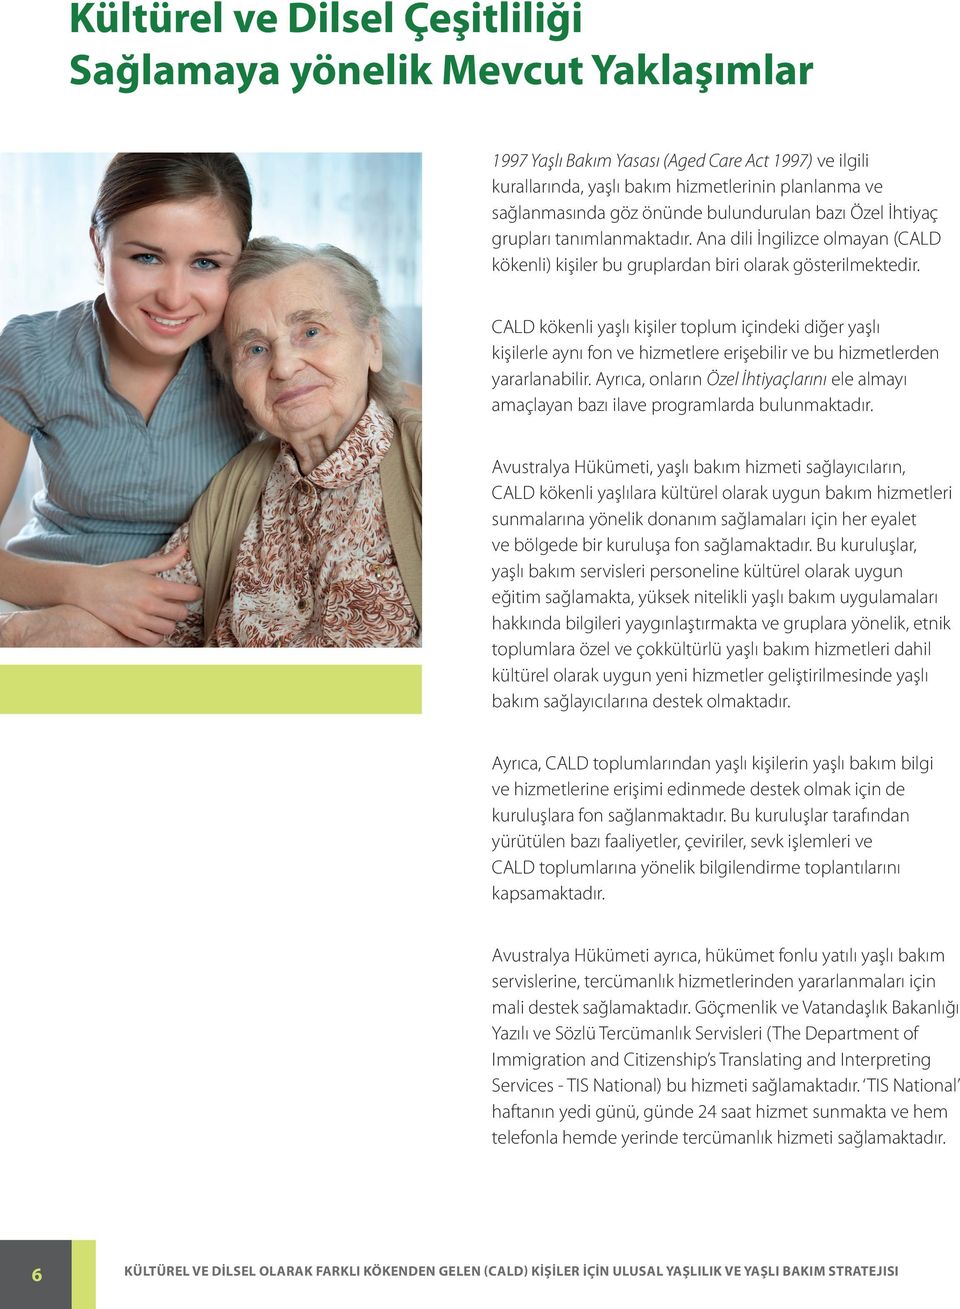 CALD kökenli yaşlı kişiler toplum içindeki diğer yaşlı kişilerle aynı fon ve hizmetlere erişebilir ve bu hizmetlerden yararlanabilir.